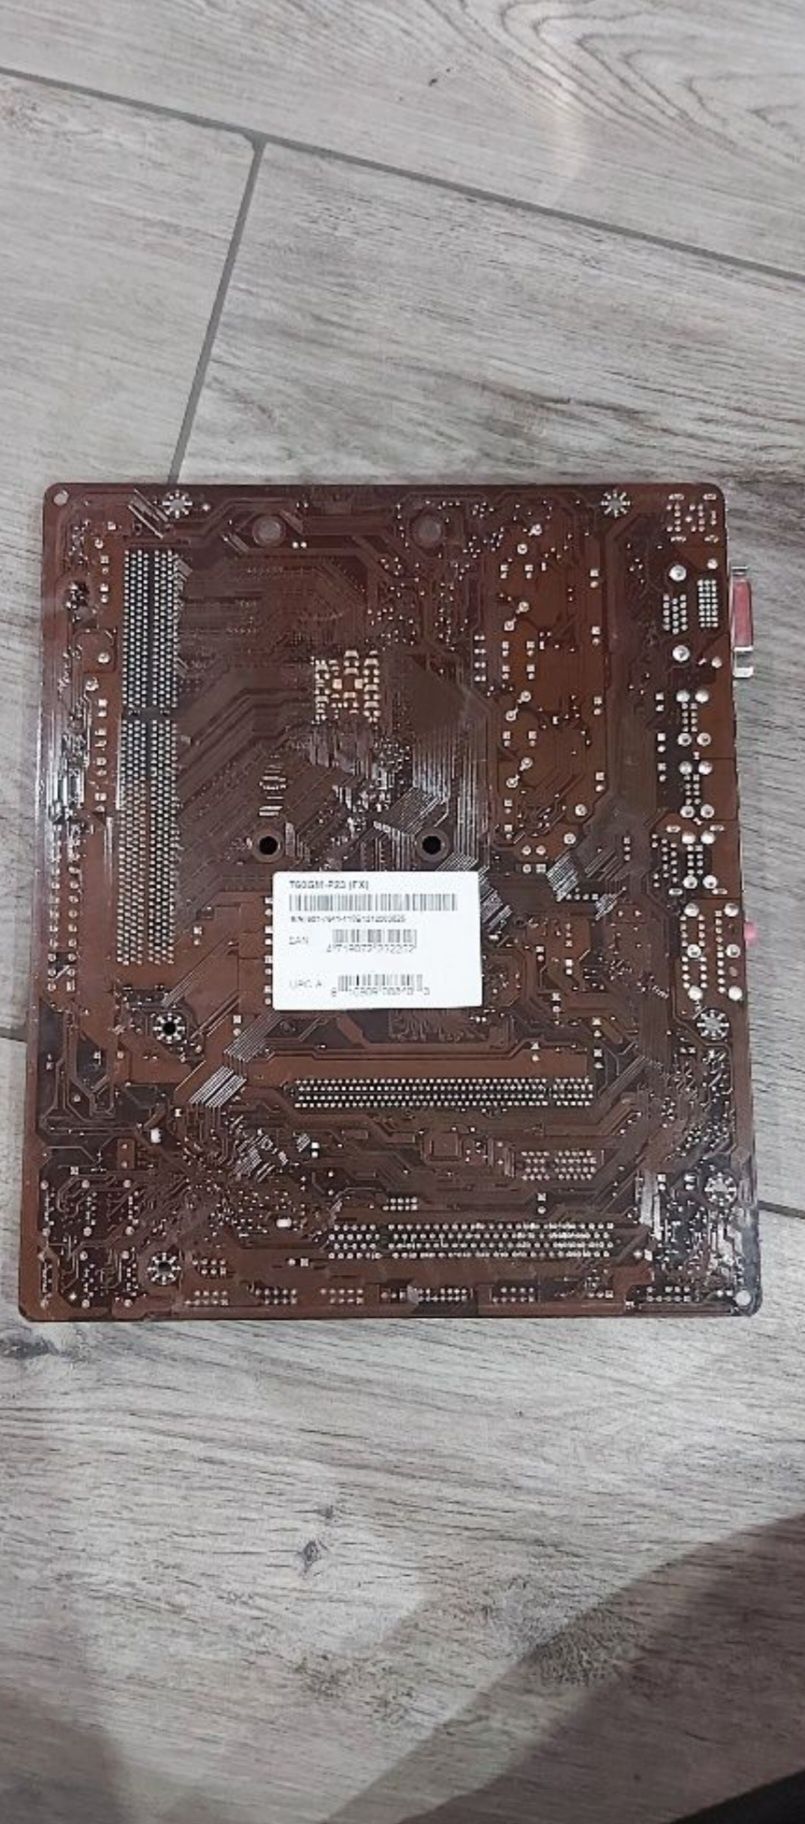 Procesor płyta główna 760GM-P23 FX